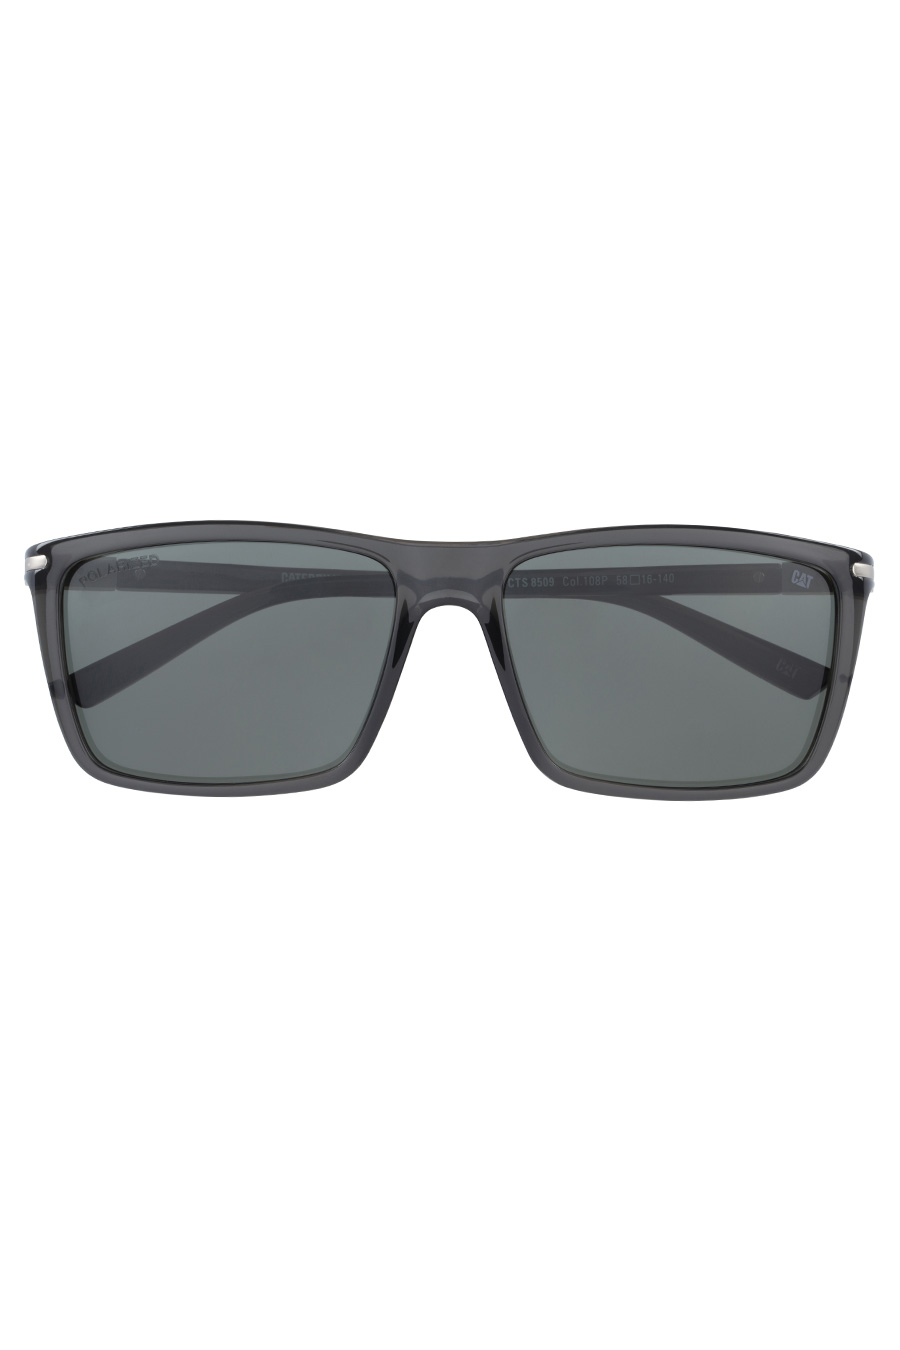 Sunglasses CAT CPS-8509-108P